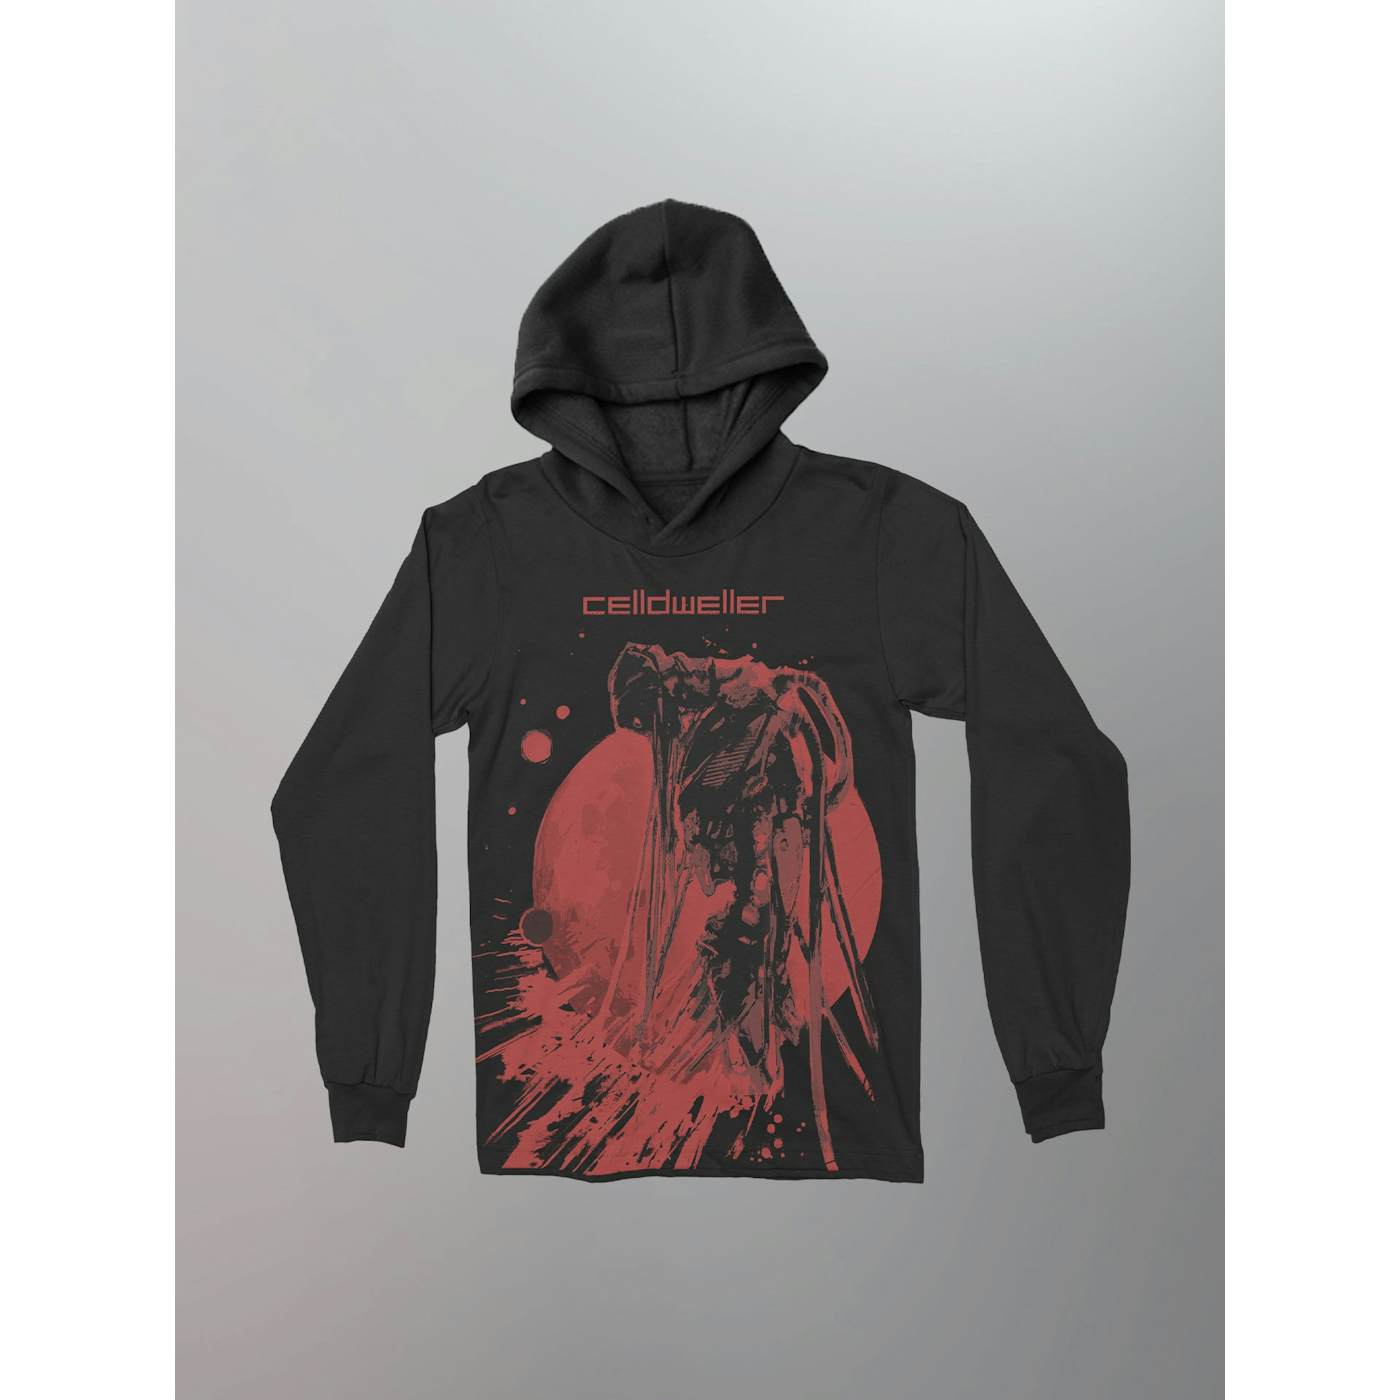 Celldweller - Blood Moon L/S Hooded Shirt